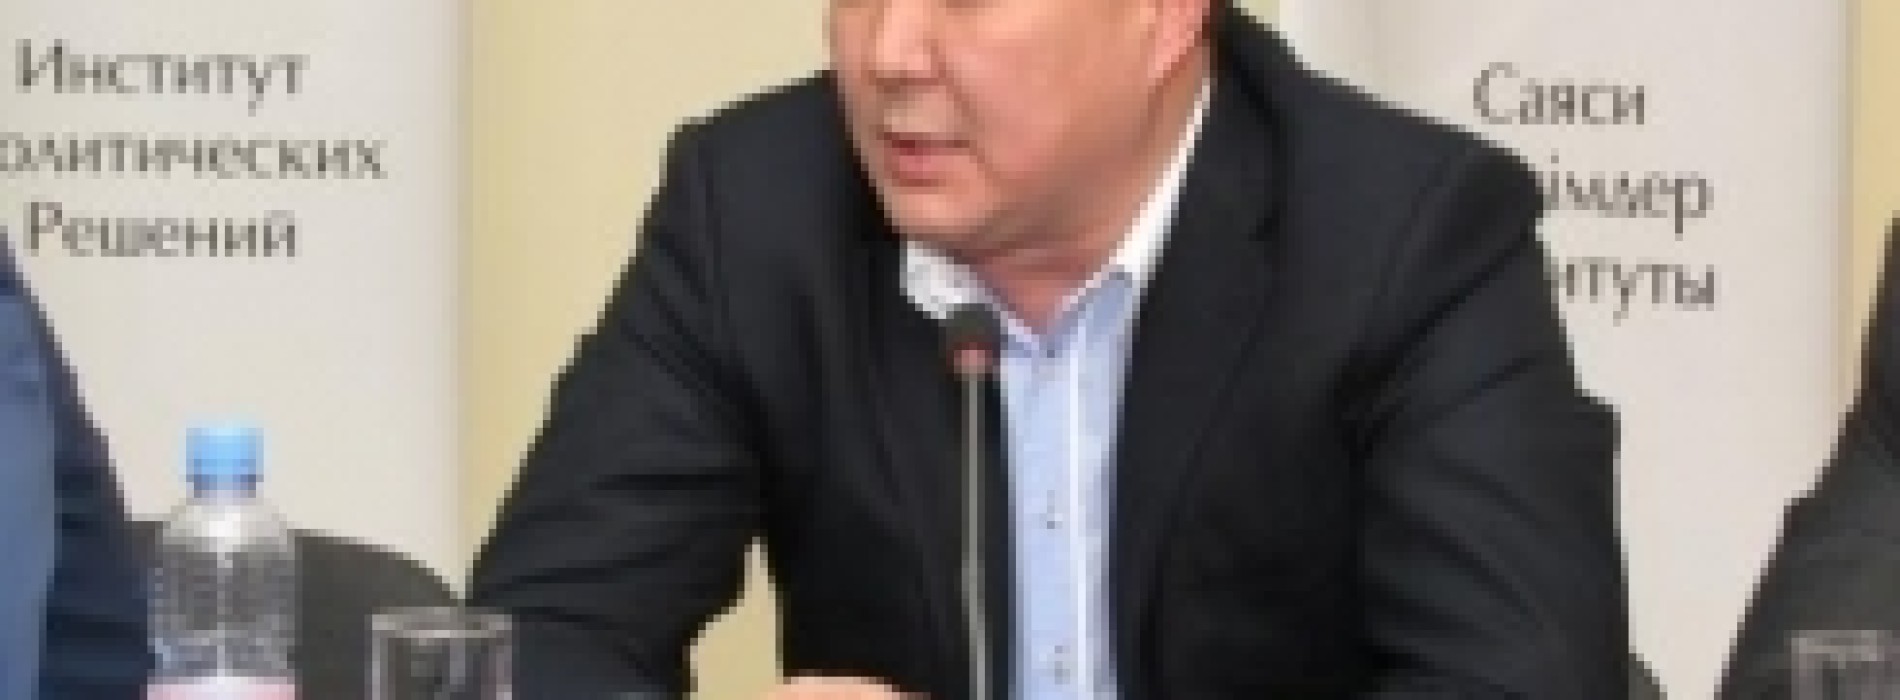 Талгат Абдижаппаров: «Казахстанские «креаклы» имеют «мещанскую» особенность»